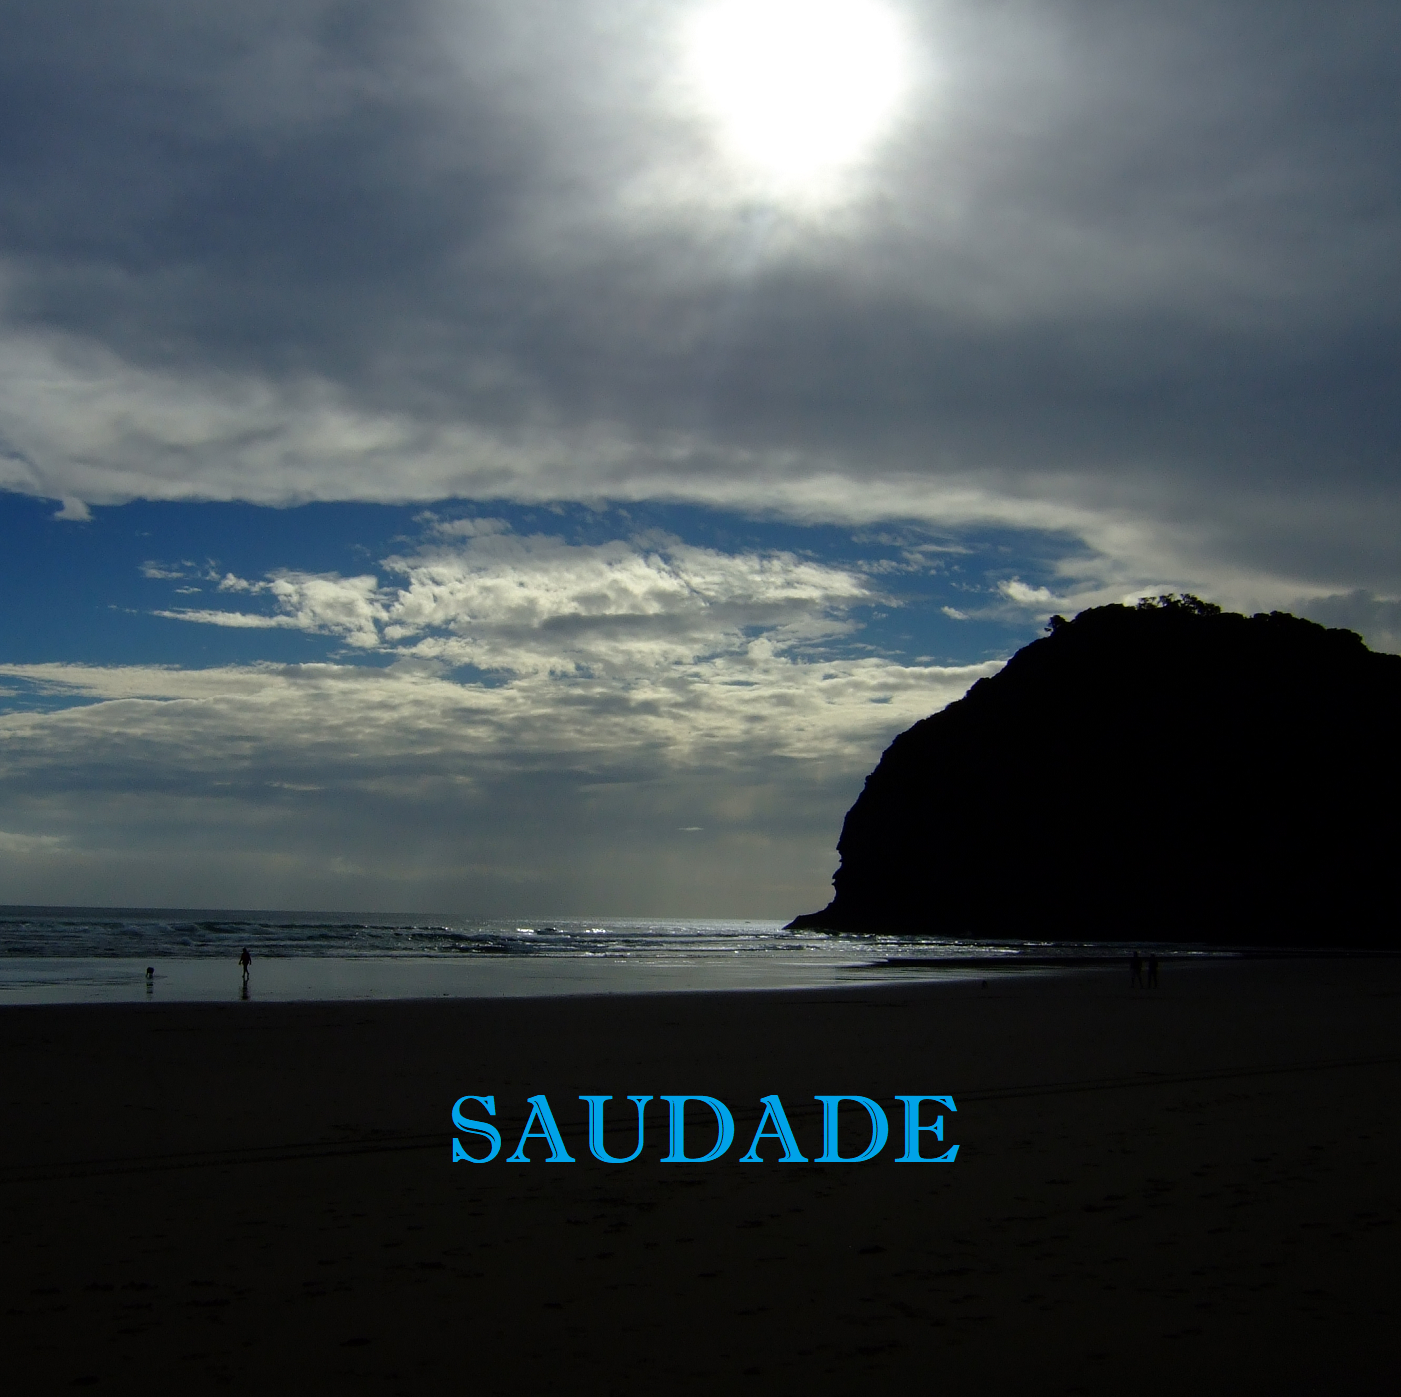 Saudade: A Deep Emotional State Of Nos